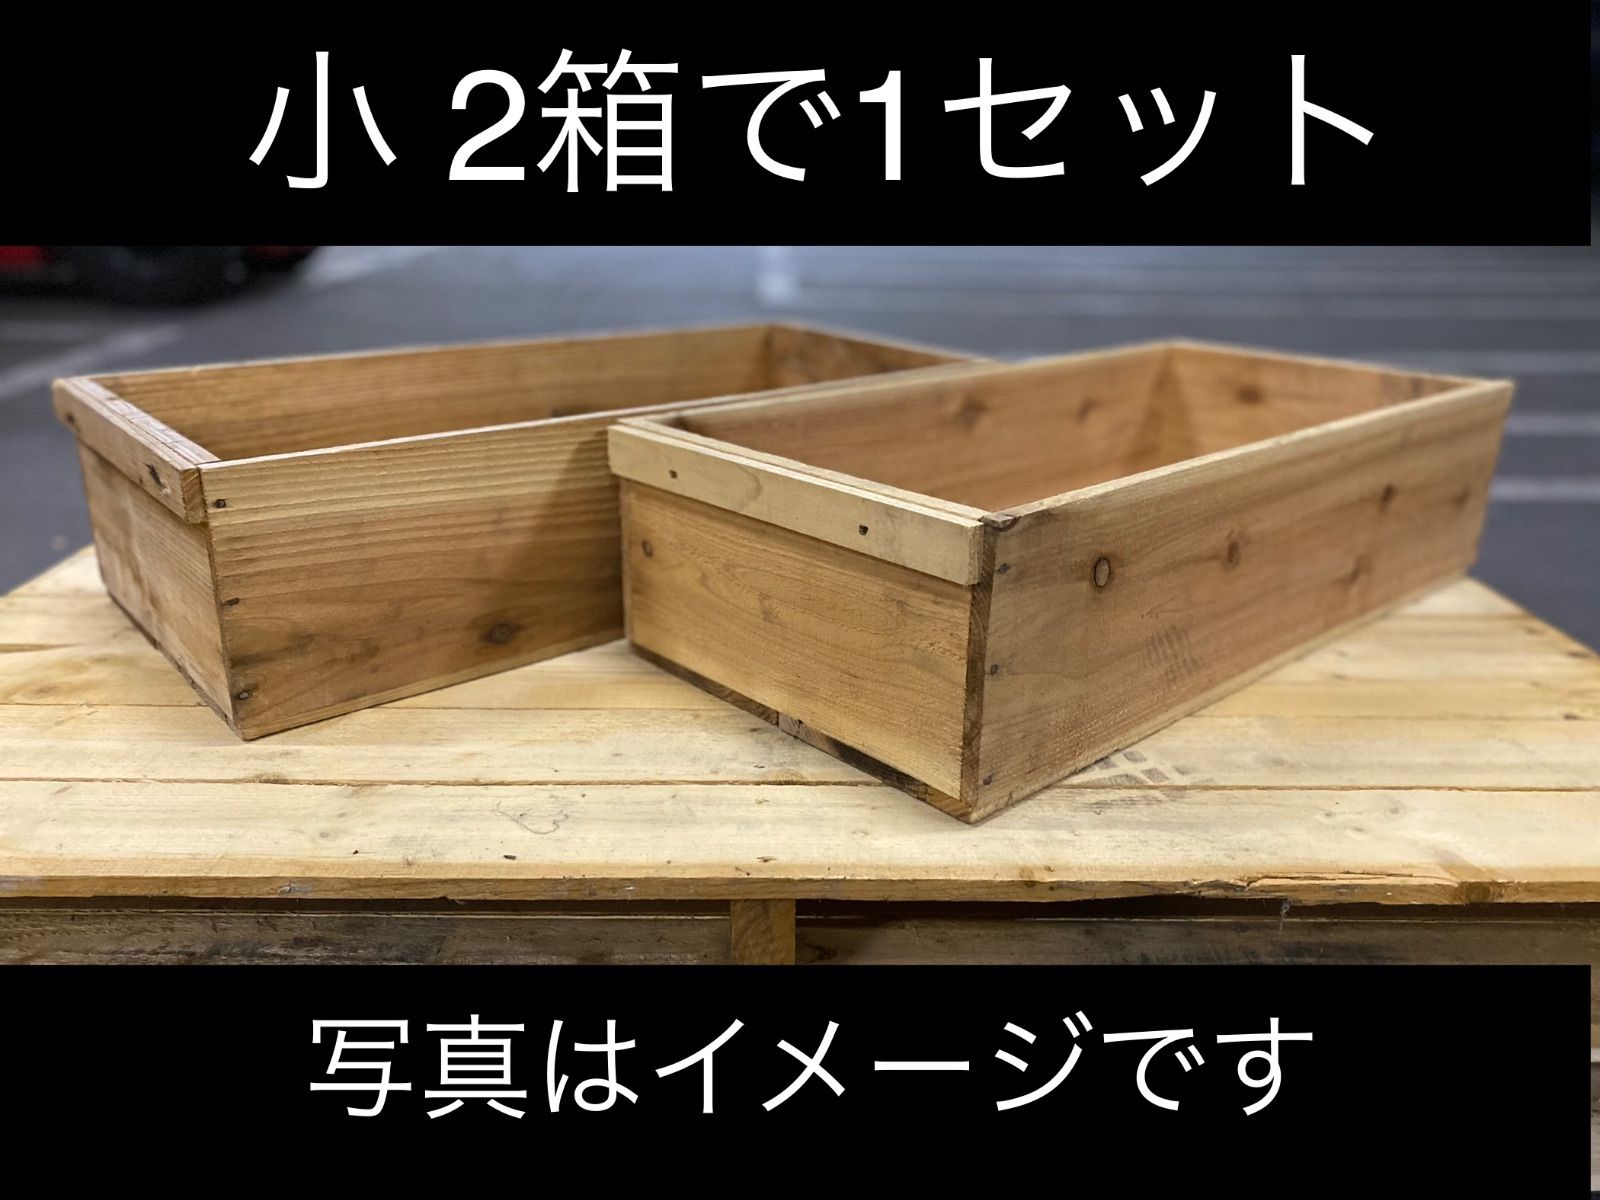 ①20個セット送料無料リンゴ箱りんご箱C品木箱 - 棚